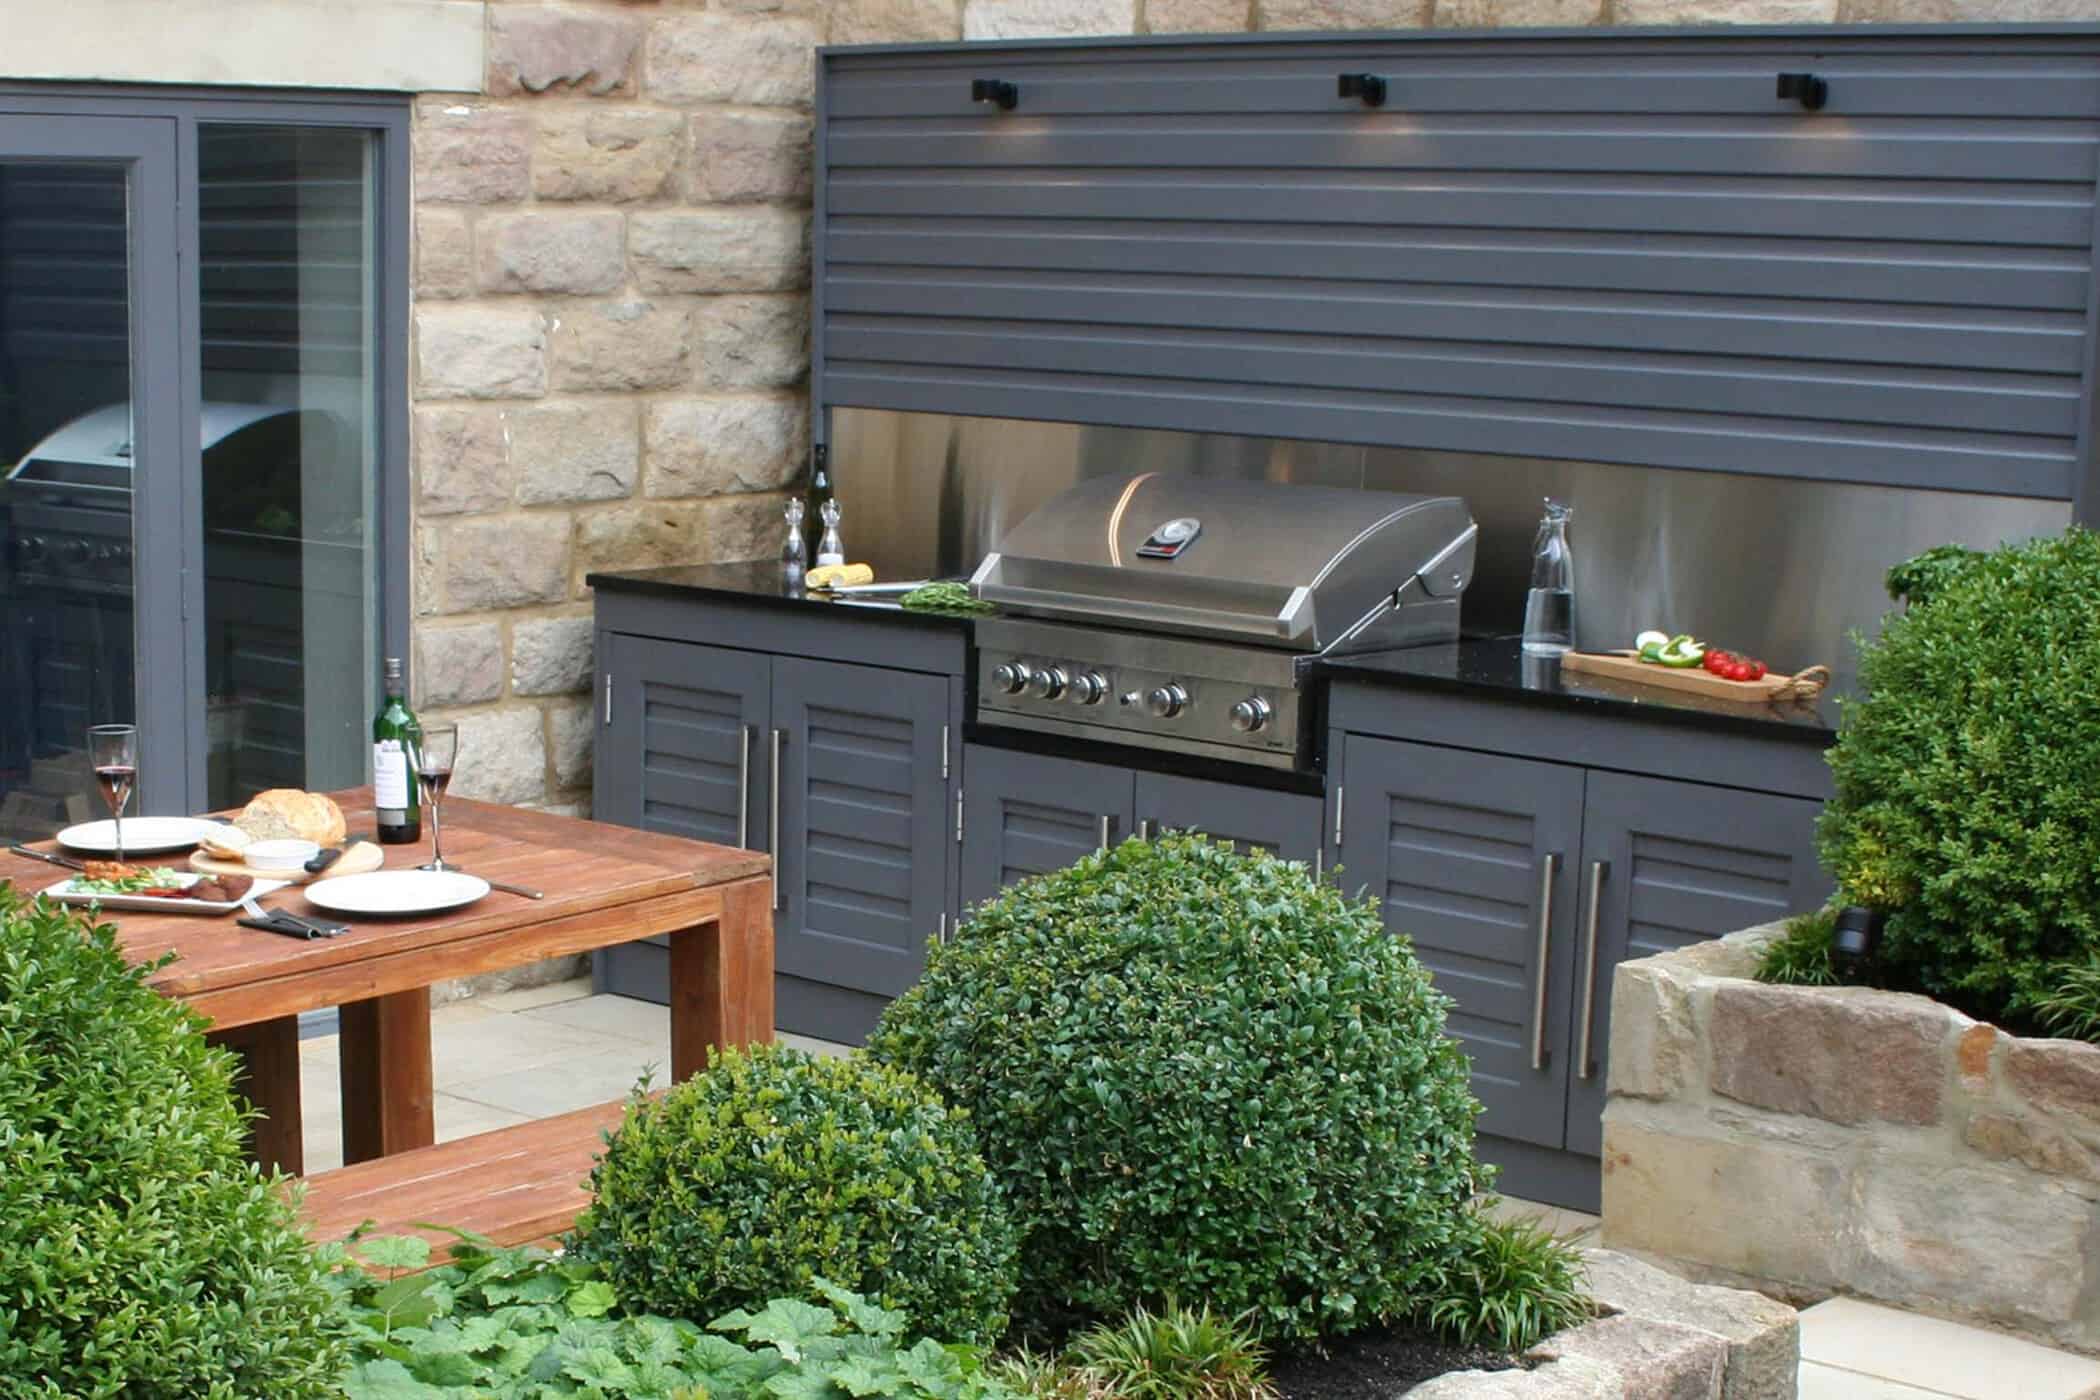 Outdoor Kitchen, Bestall amp; Co, Garden design,BBQ